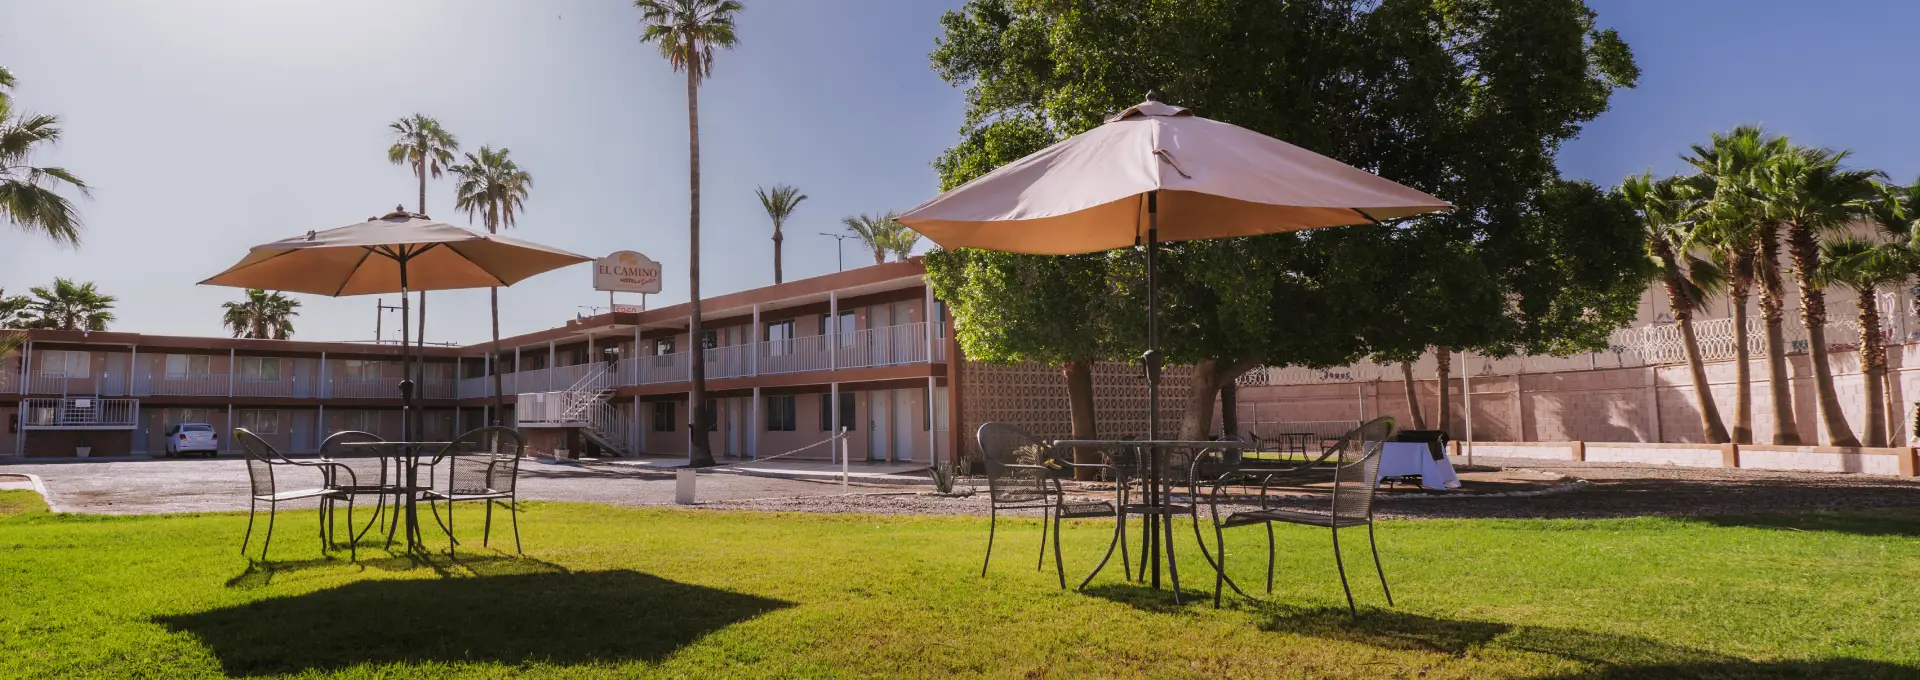 Hospedaje Habitaciones El Camino Hotel & Suites Caborca Sonora